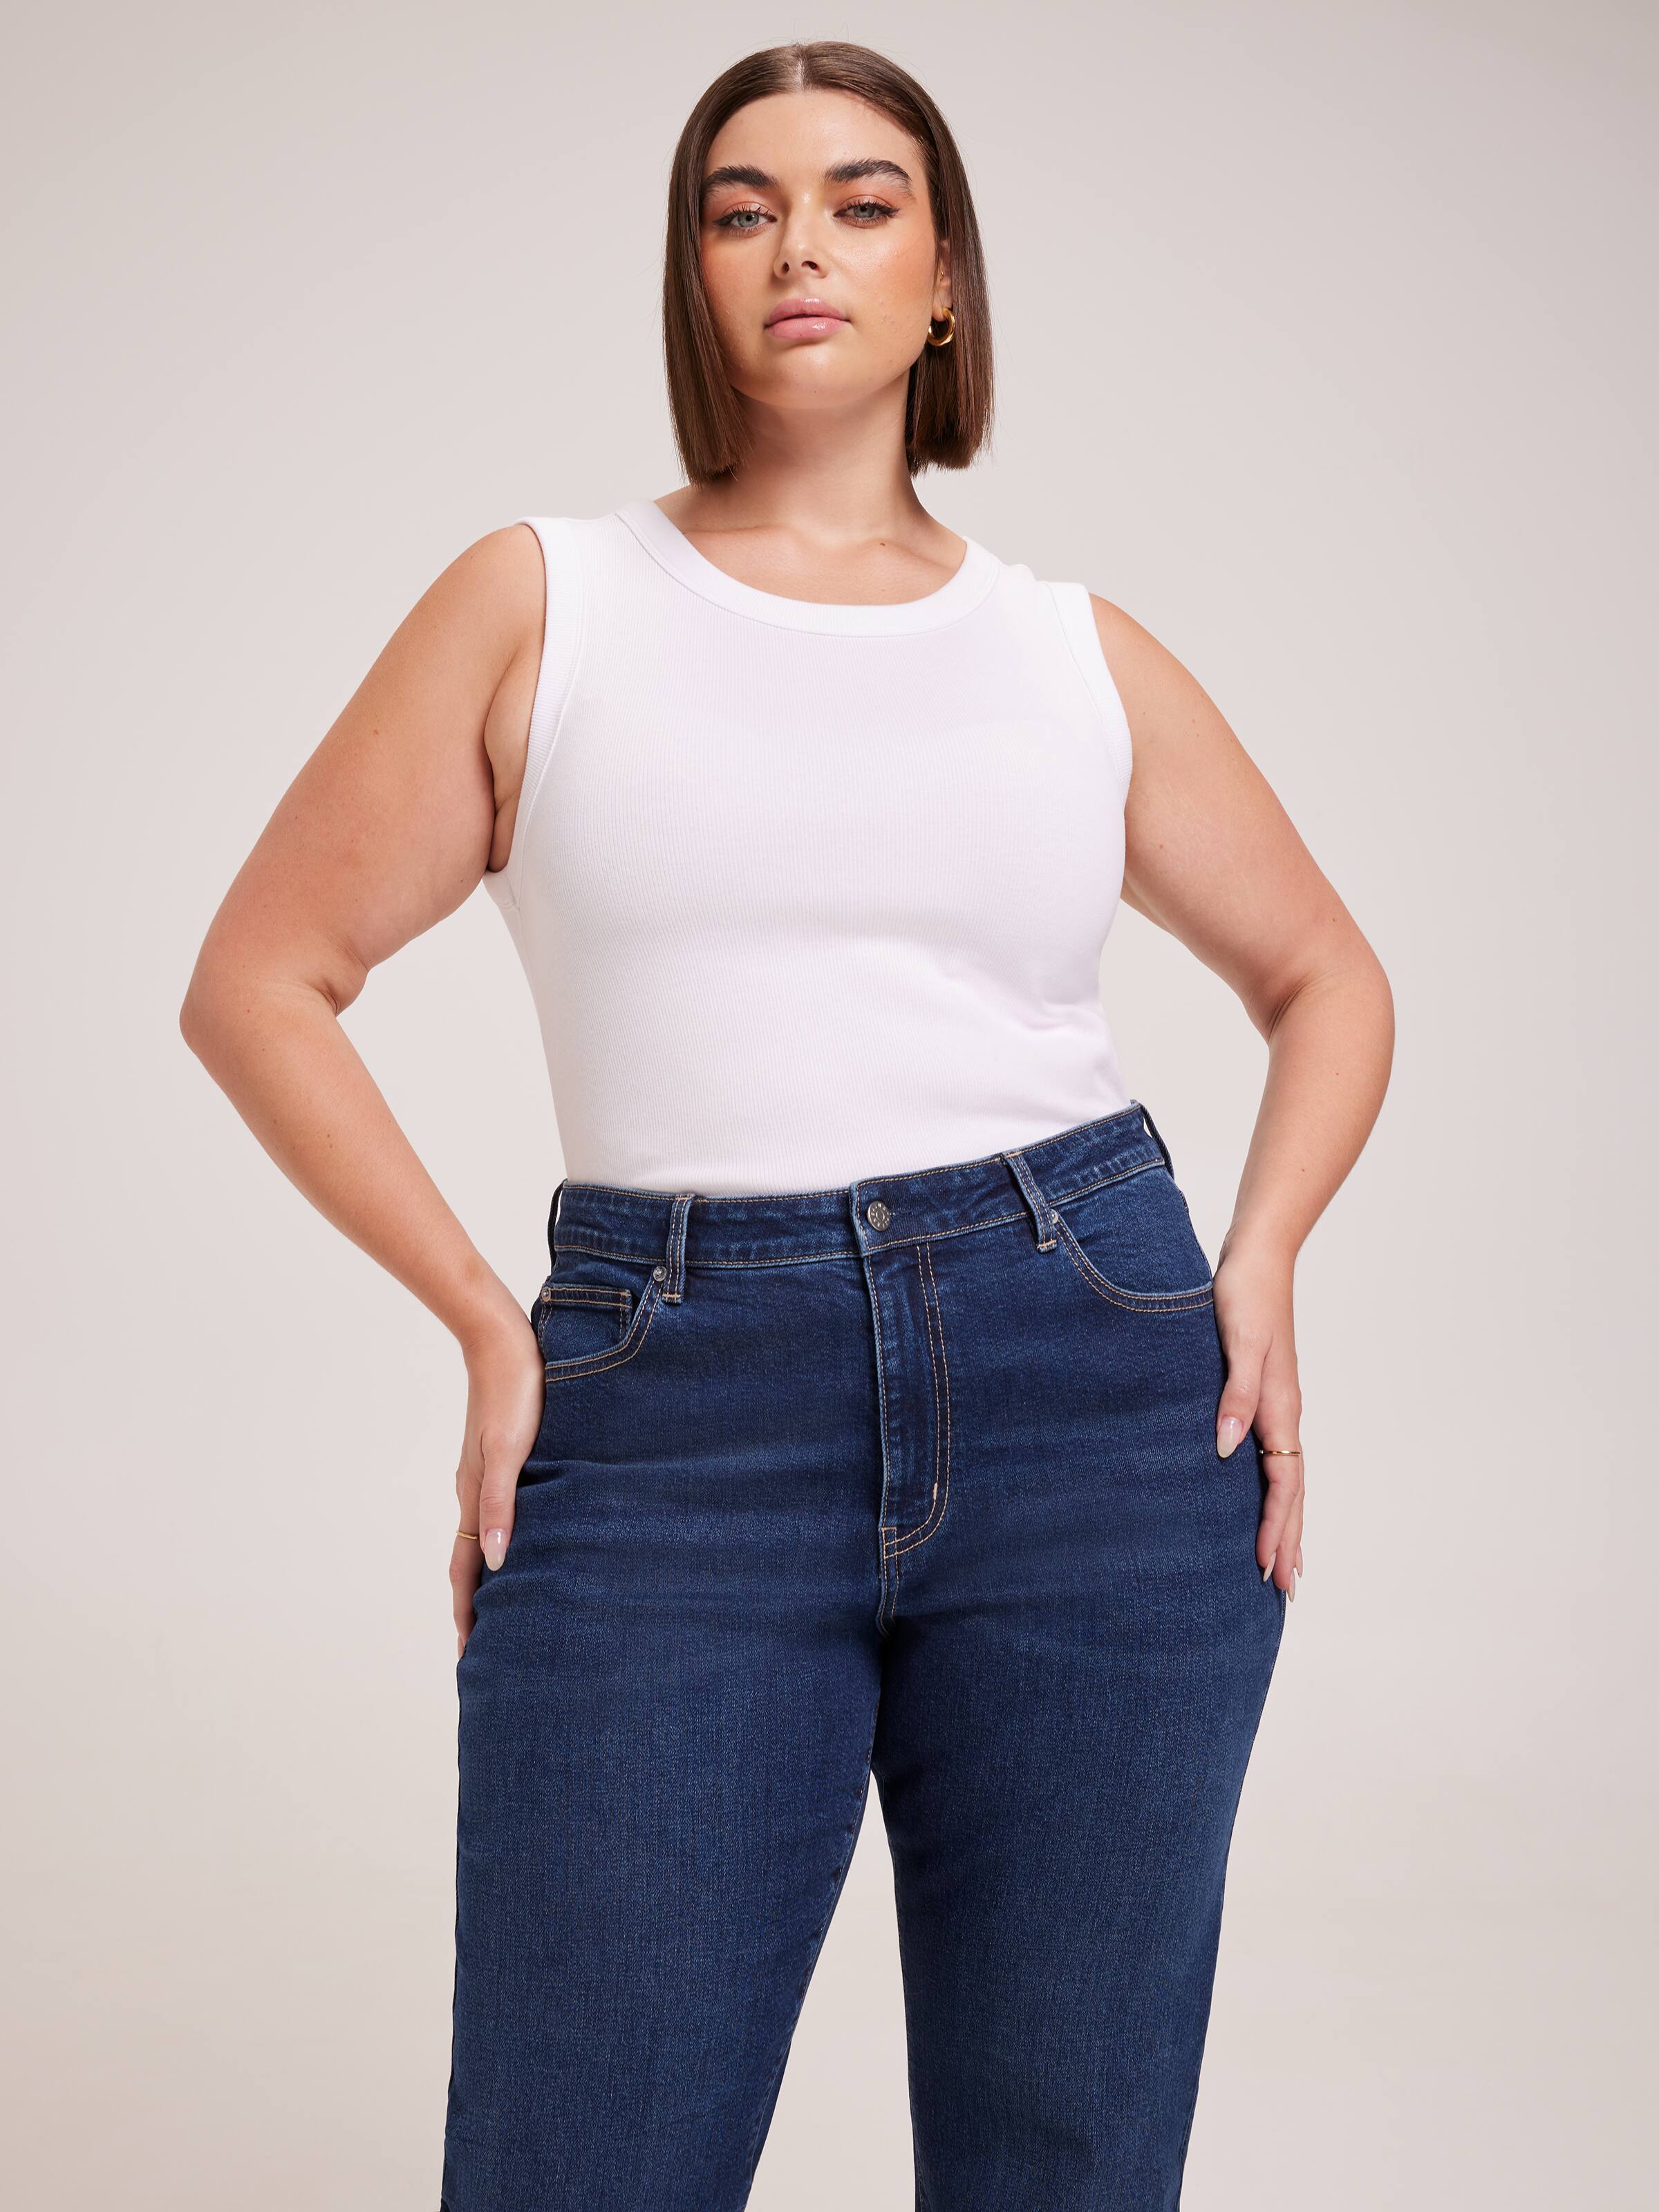 Women's Curve & Plus Size Jeans